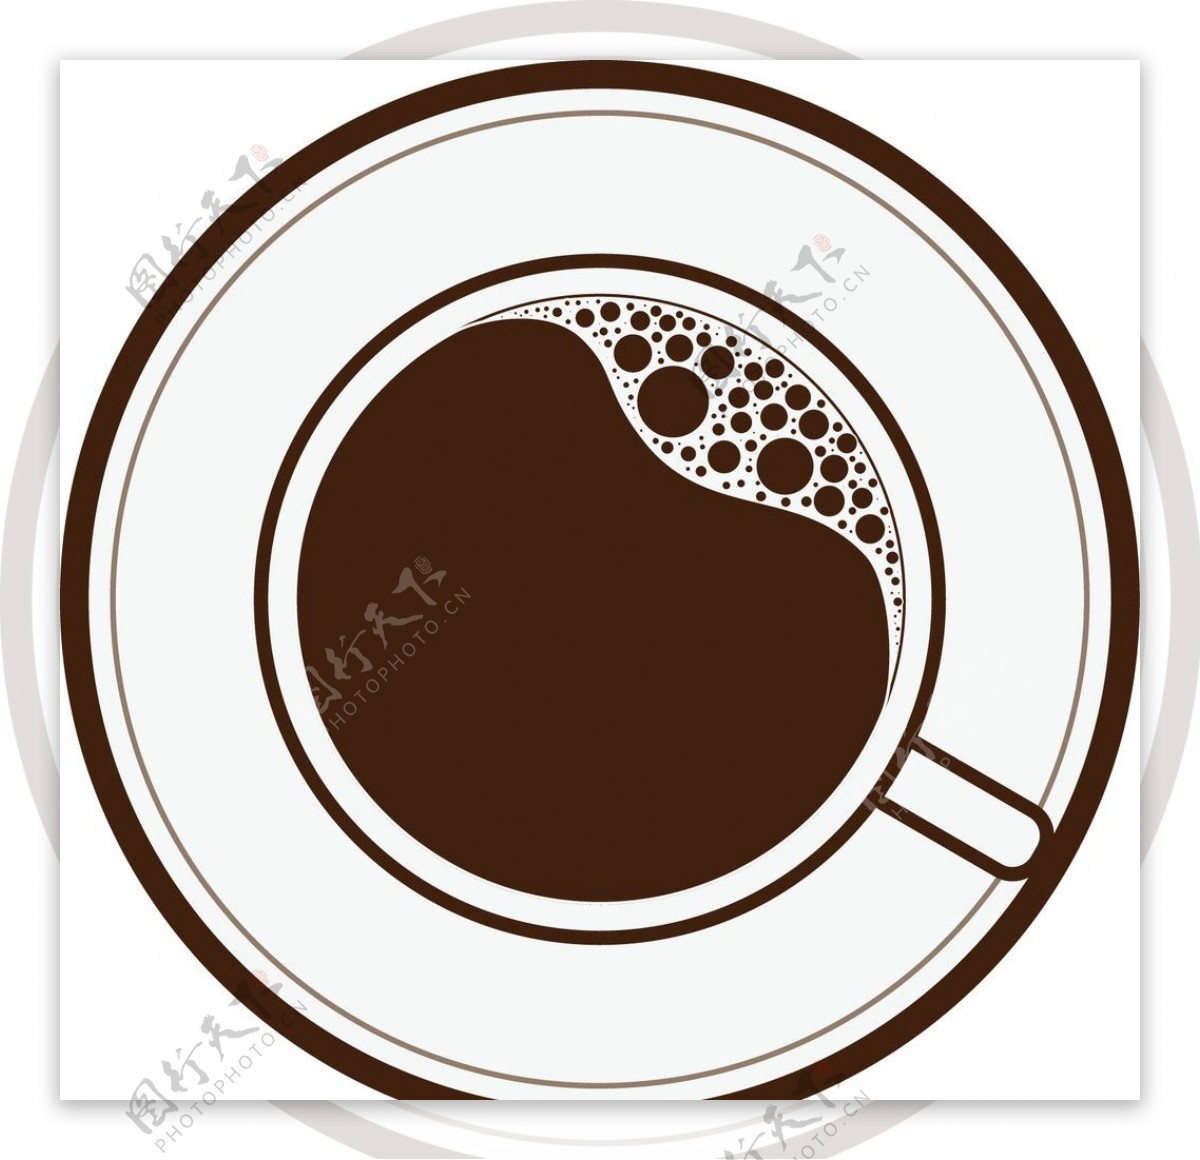 一杯咖啡LOGO图片